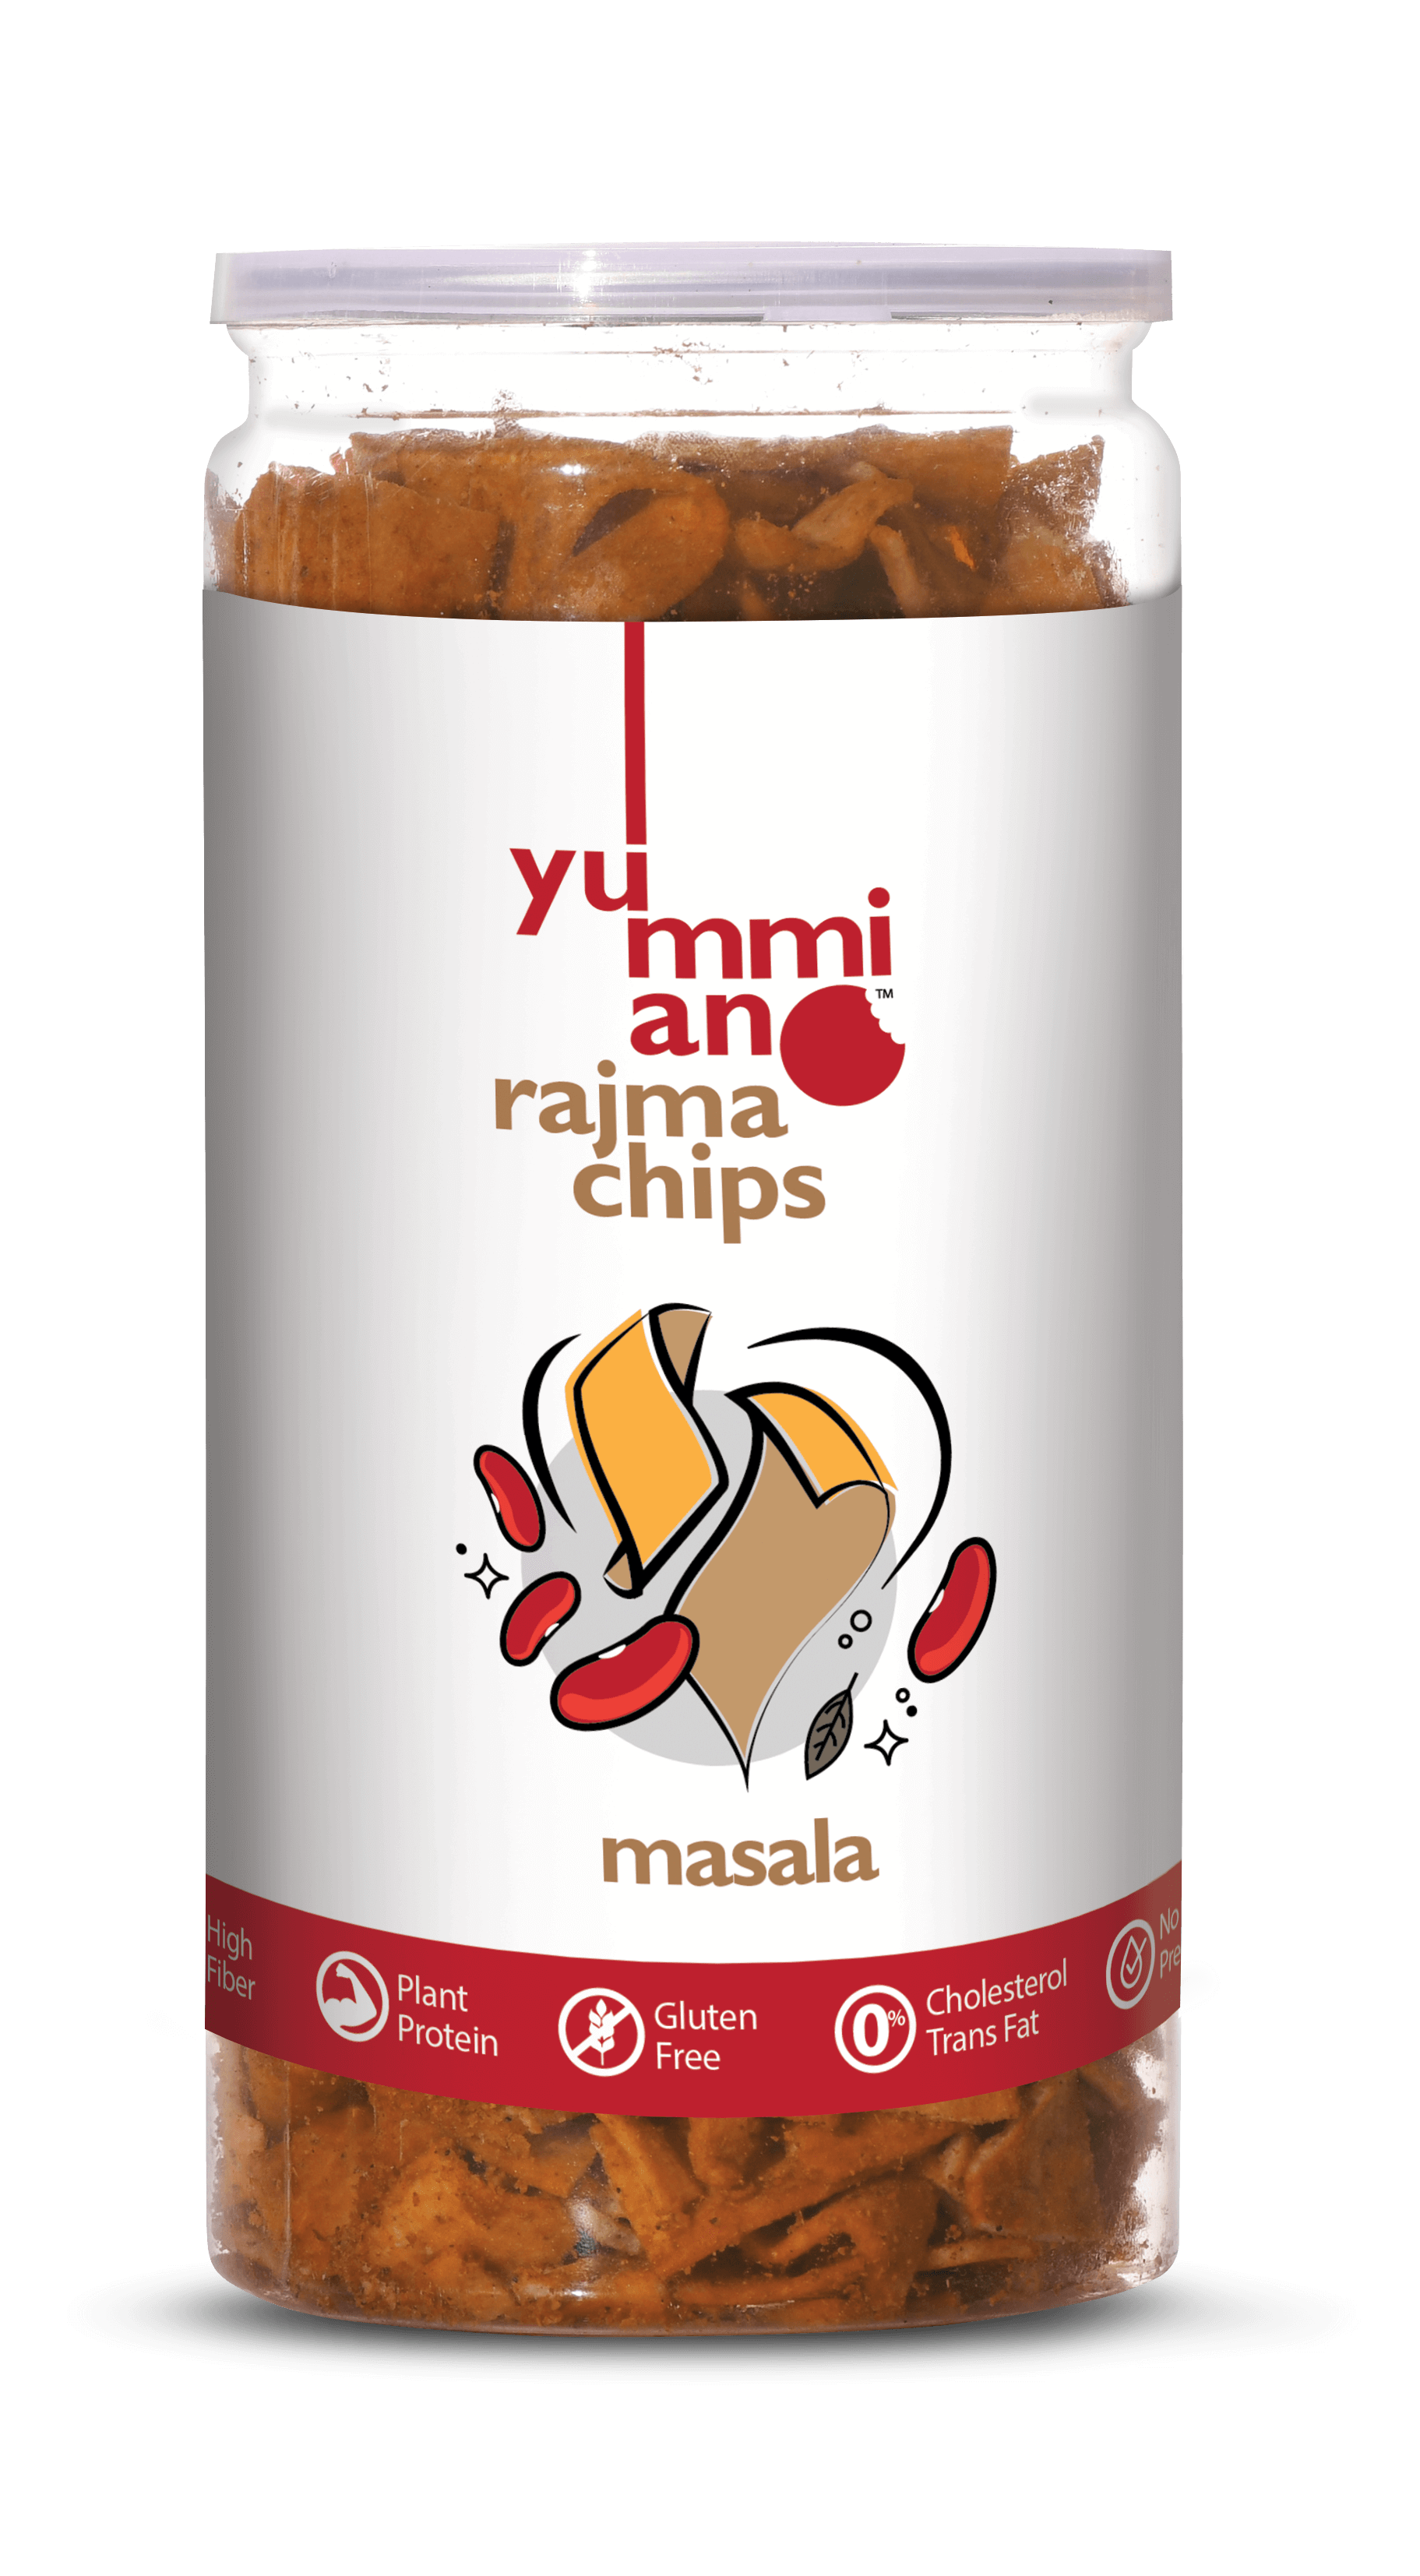 YummianoÂ¬Â¨âˆšÃœ Rajma Chips â€šÃ„Ã¶âˆšÃ‘âˆšÂ¨ Masala Image